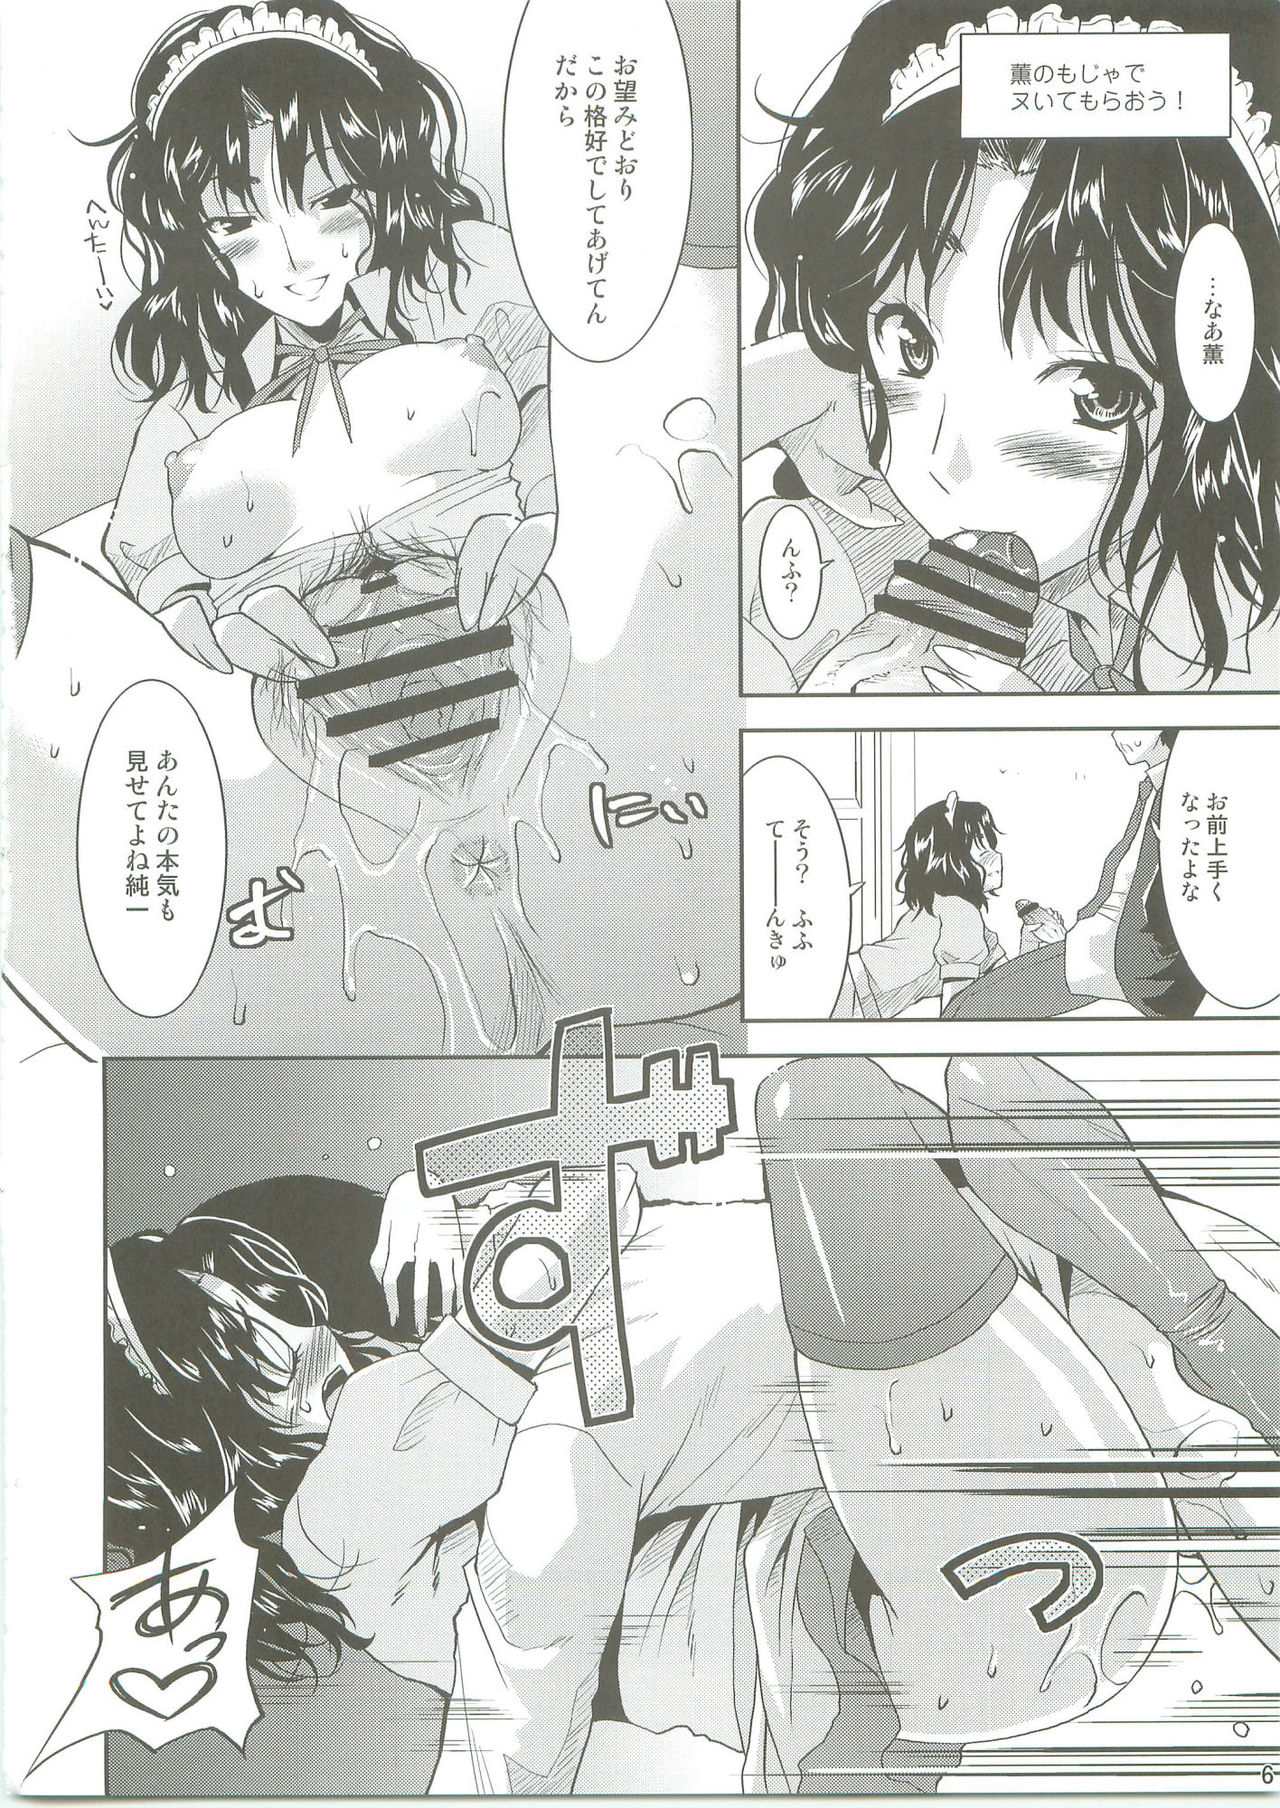 [gos to vi (Utamaro)] Lovely Heart Breaker (Amagami) (同人誌) [gos to vi (歌麿)] ラブリーハートブレイカー (アマガミ)